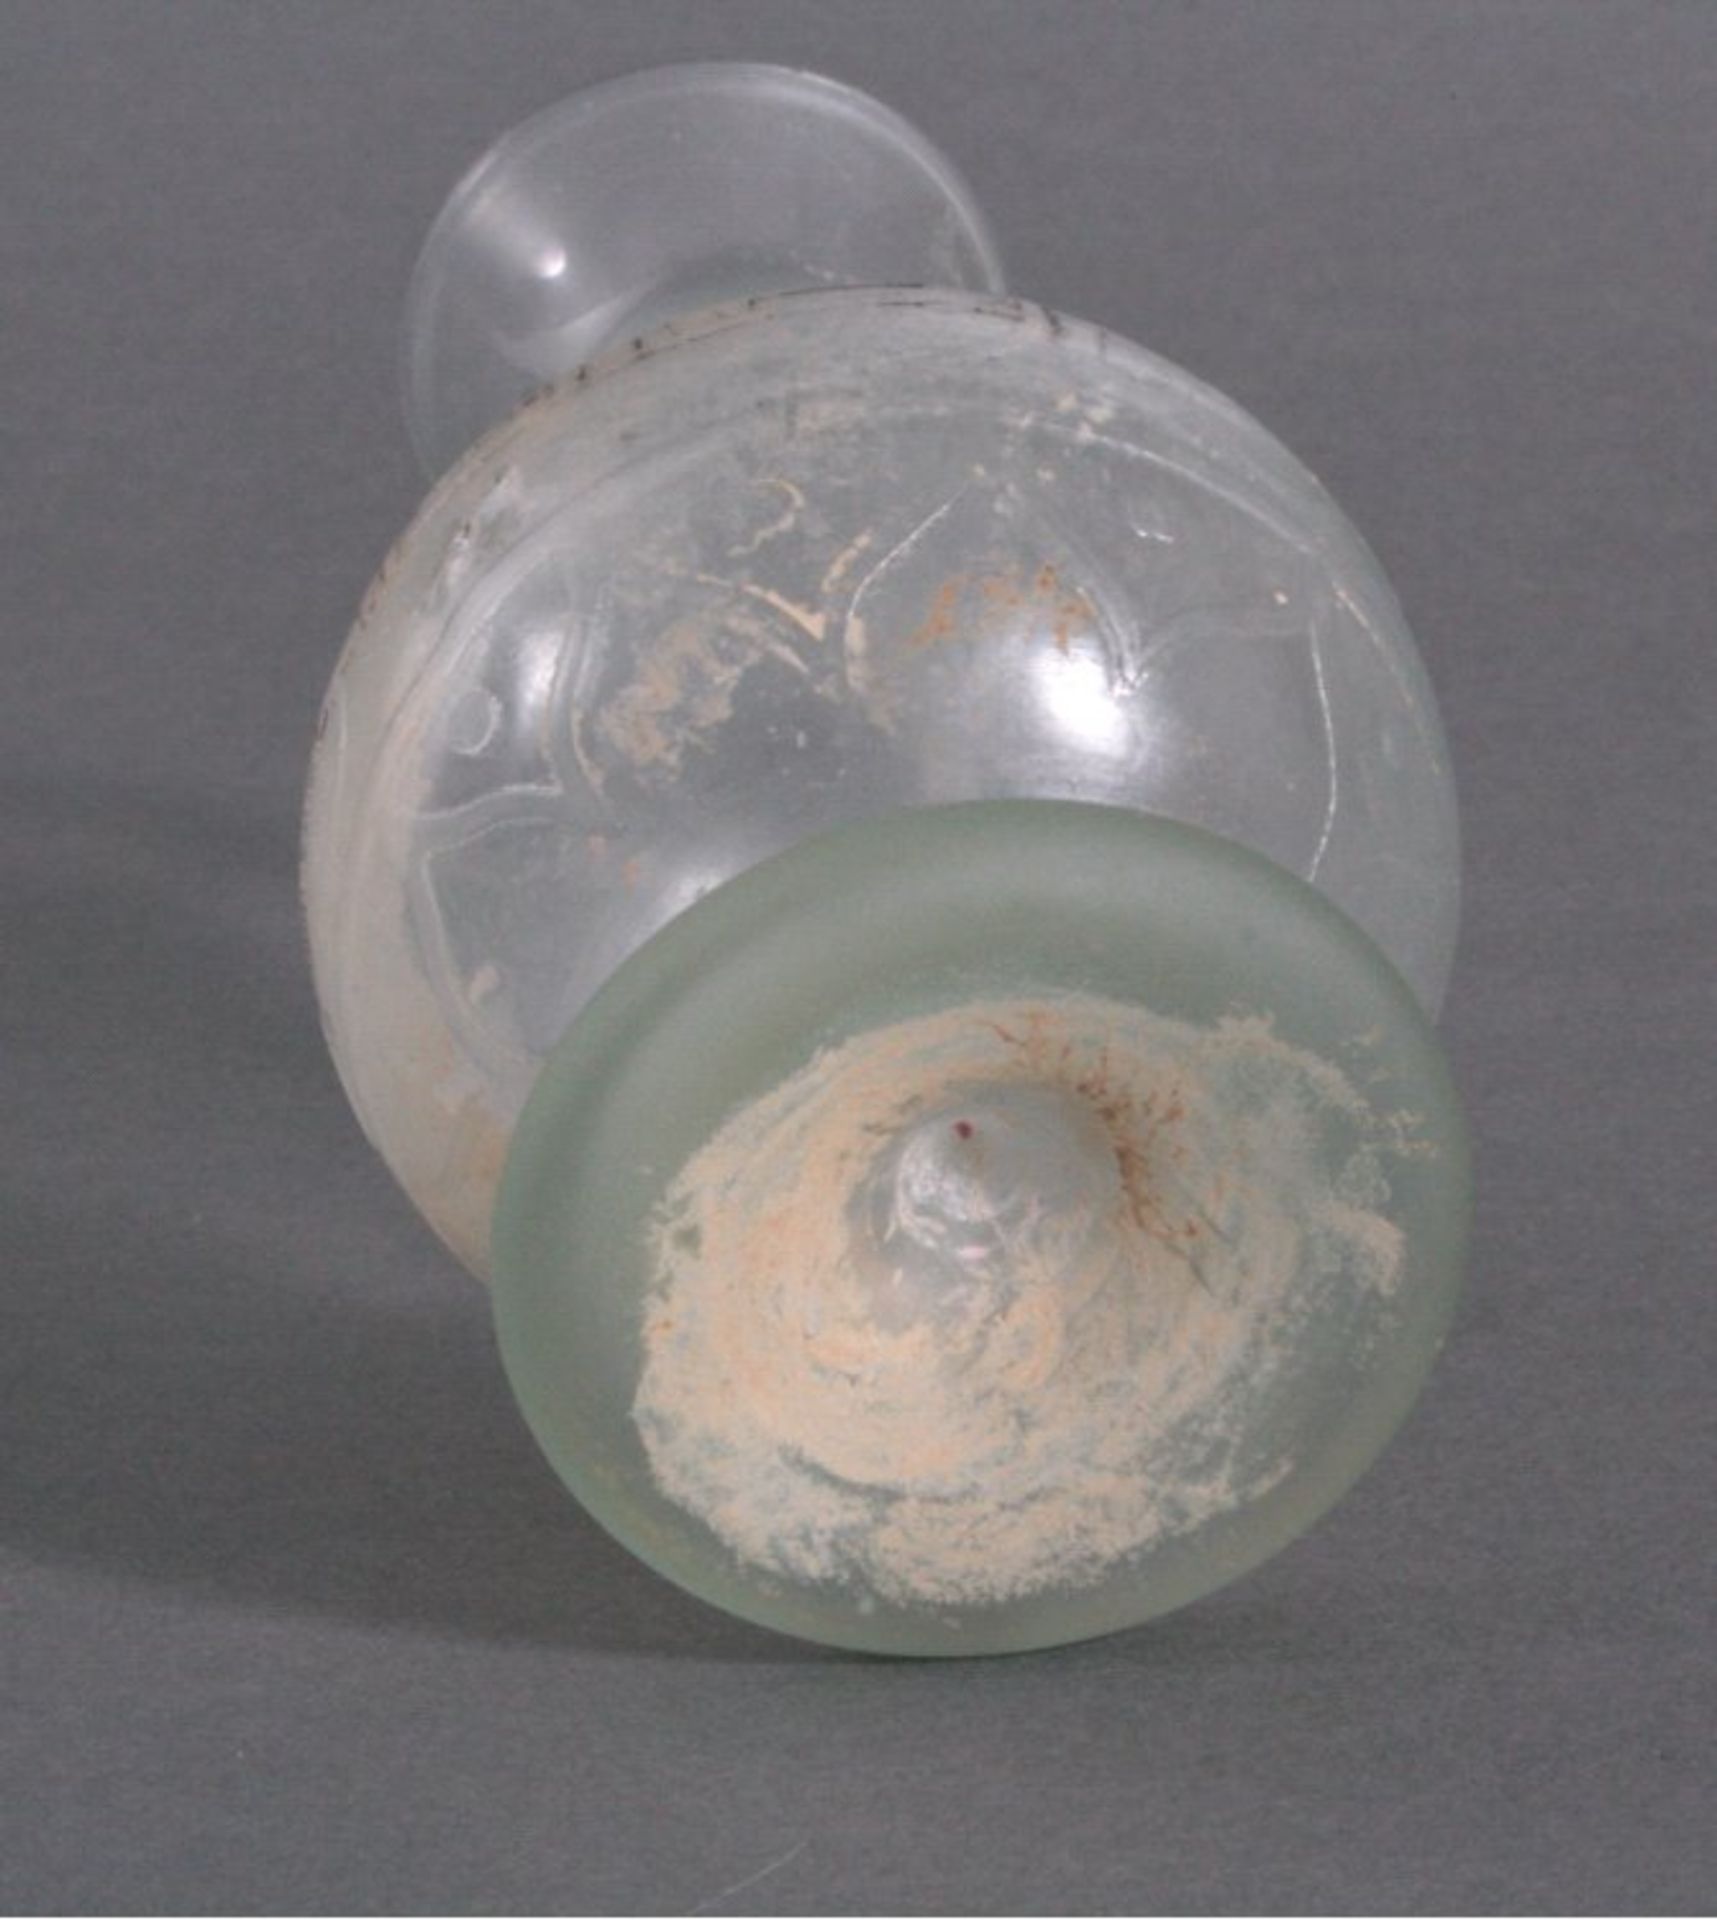 Balustervase aus Glas, Ägypten oder Syrien wohl 13./14. Jh.grünliches Glas mit Lufteinschlüssen, - Image 2 of 2